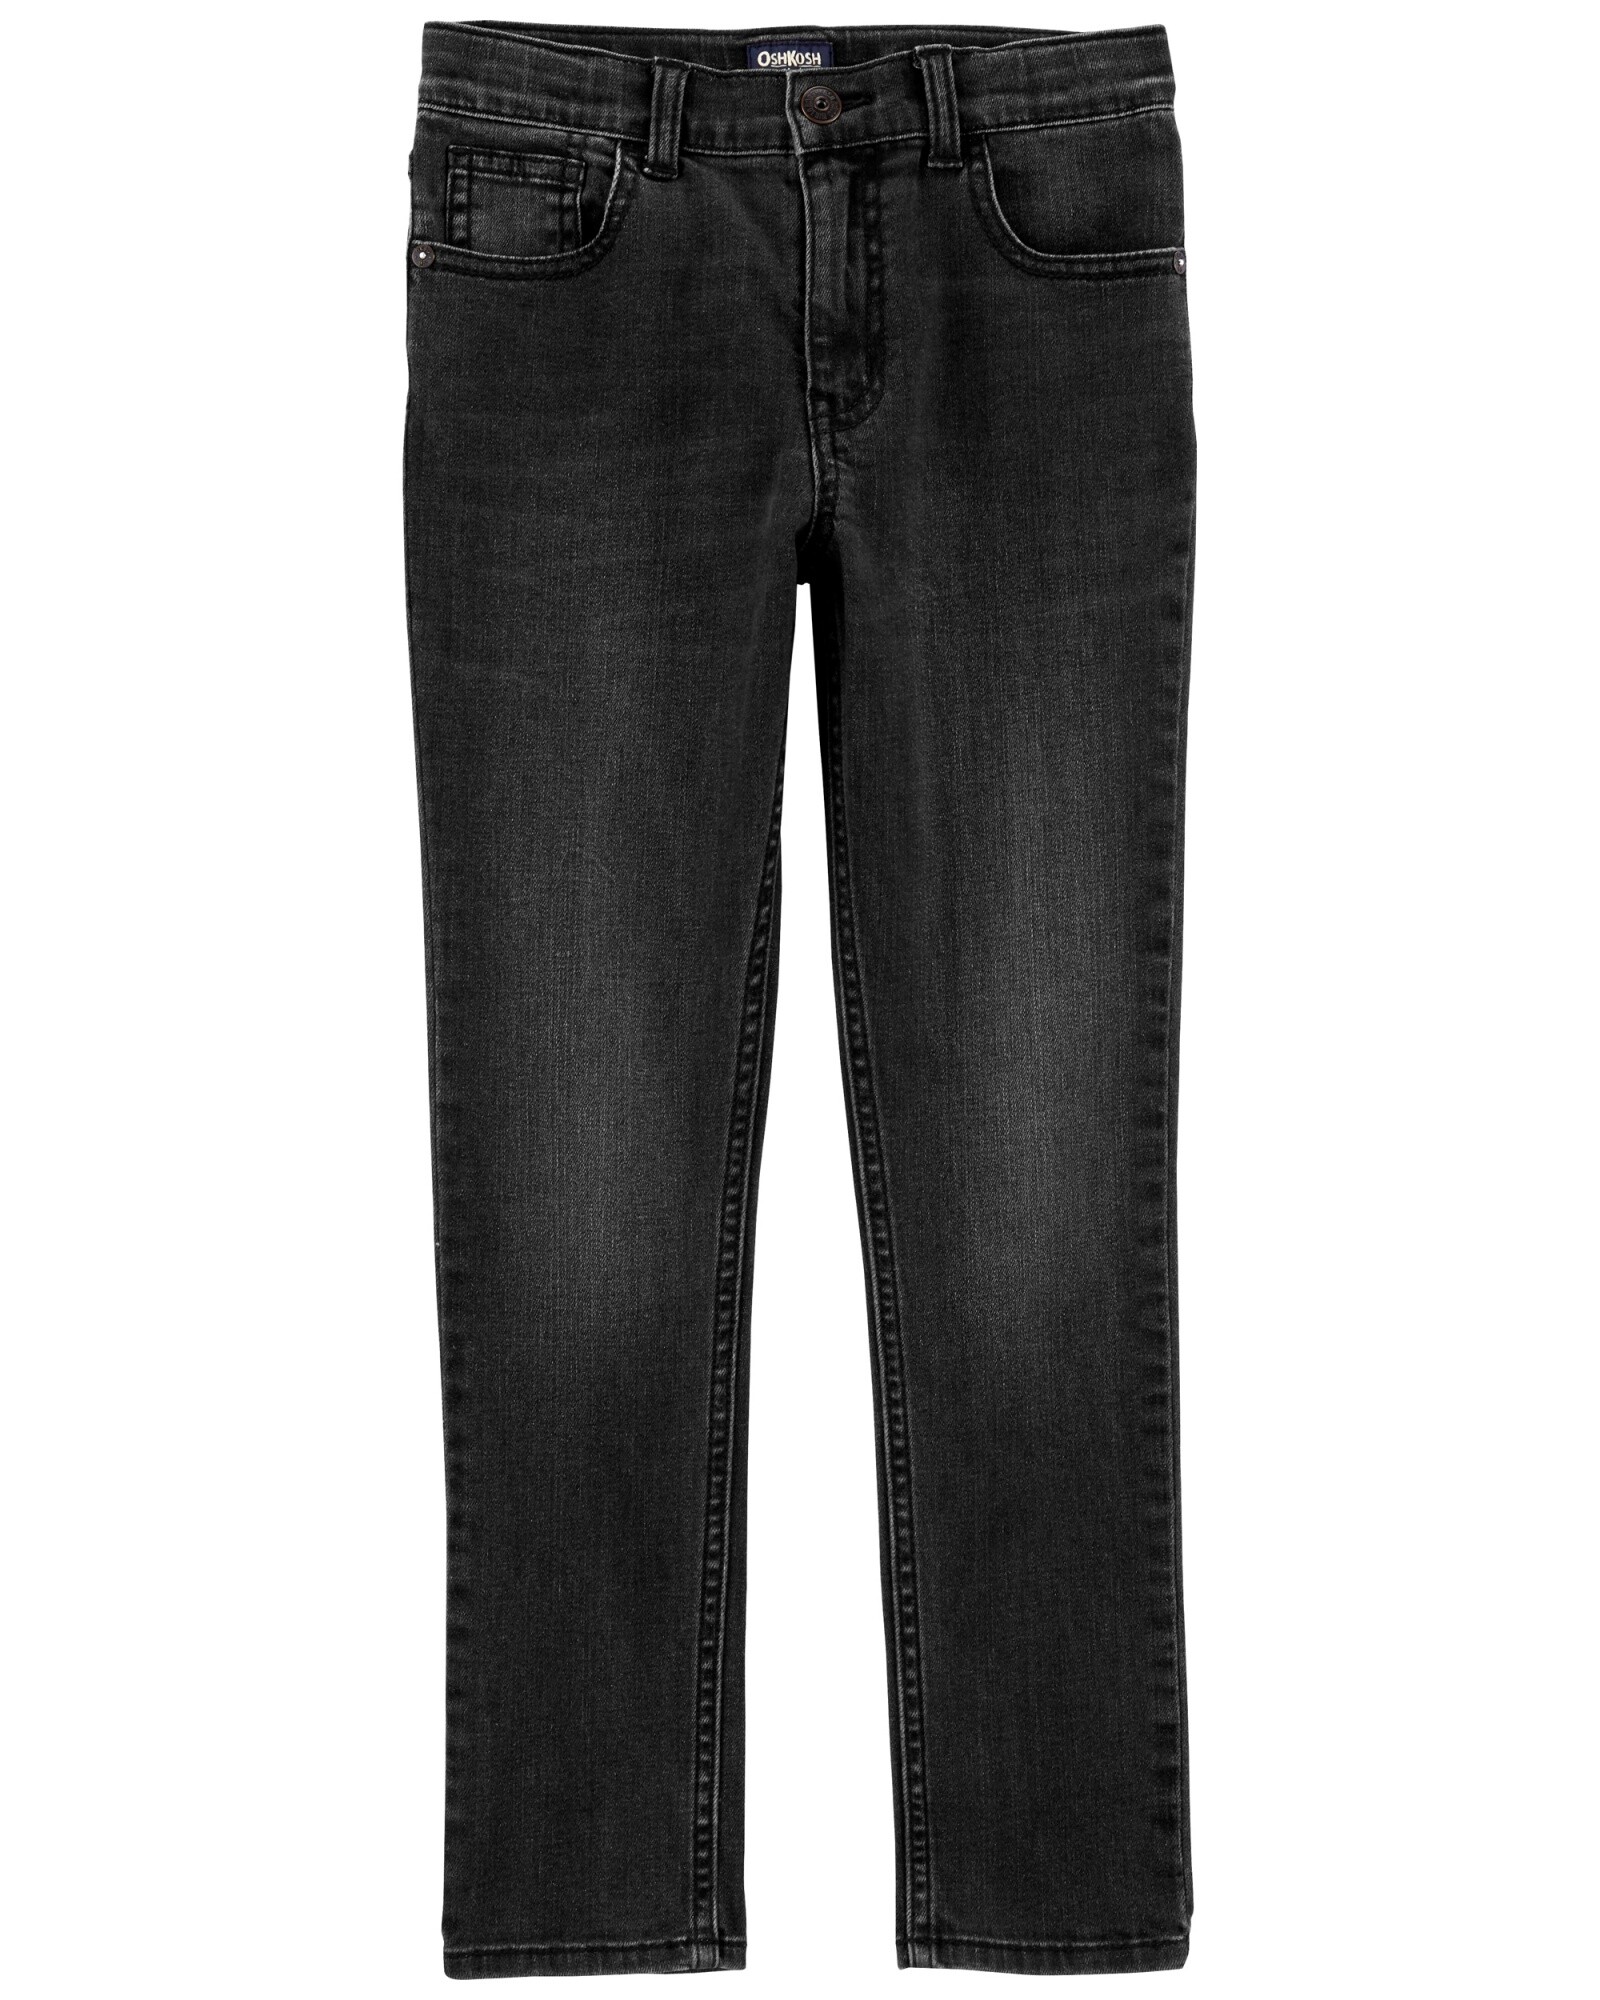 Pantalones clásicos delgados - PV24SN10403386